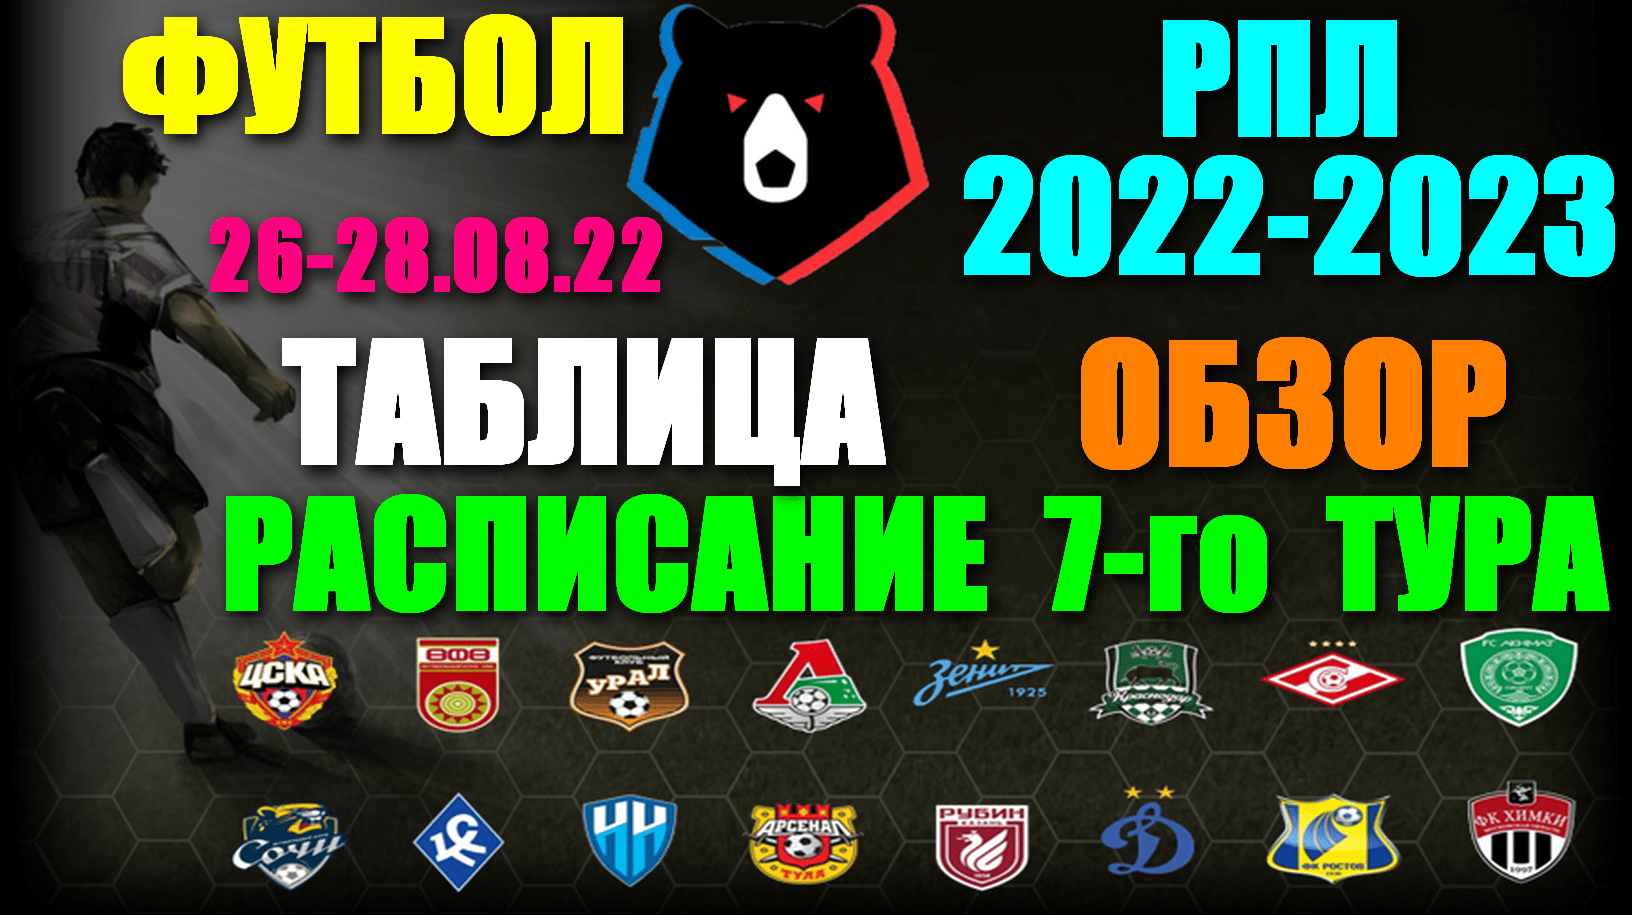 Футбол: Российская Премьер лига-2022/2023. Расписание 7-го тура 26 - 28.08.22. Турнирная таблица